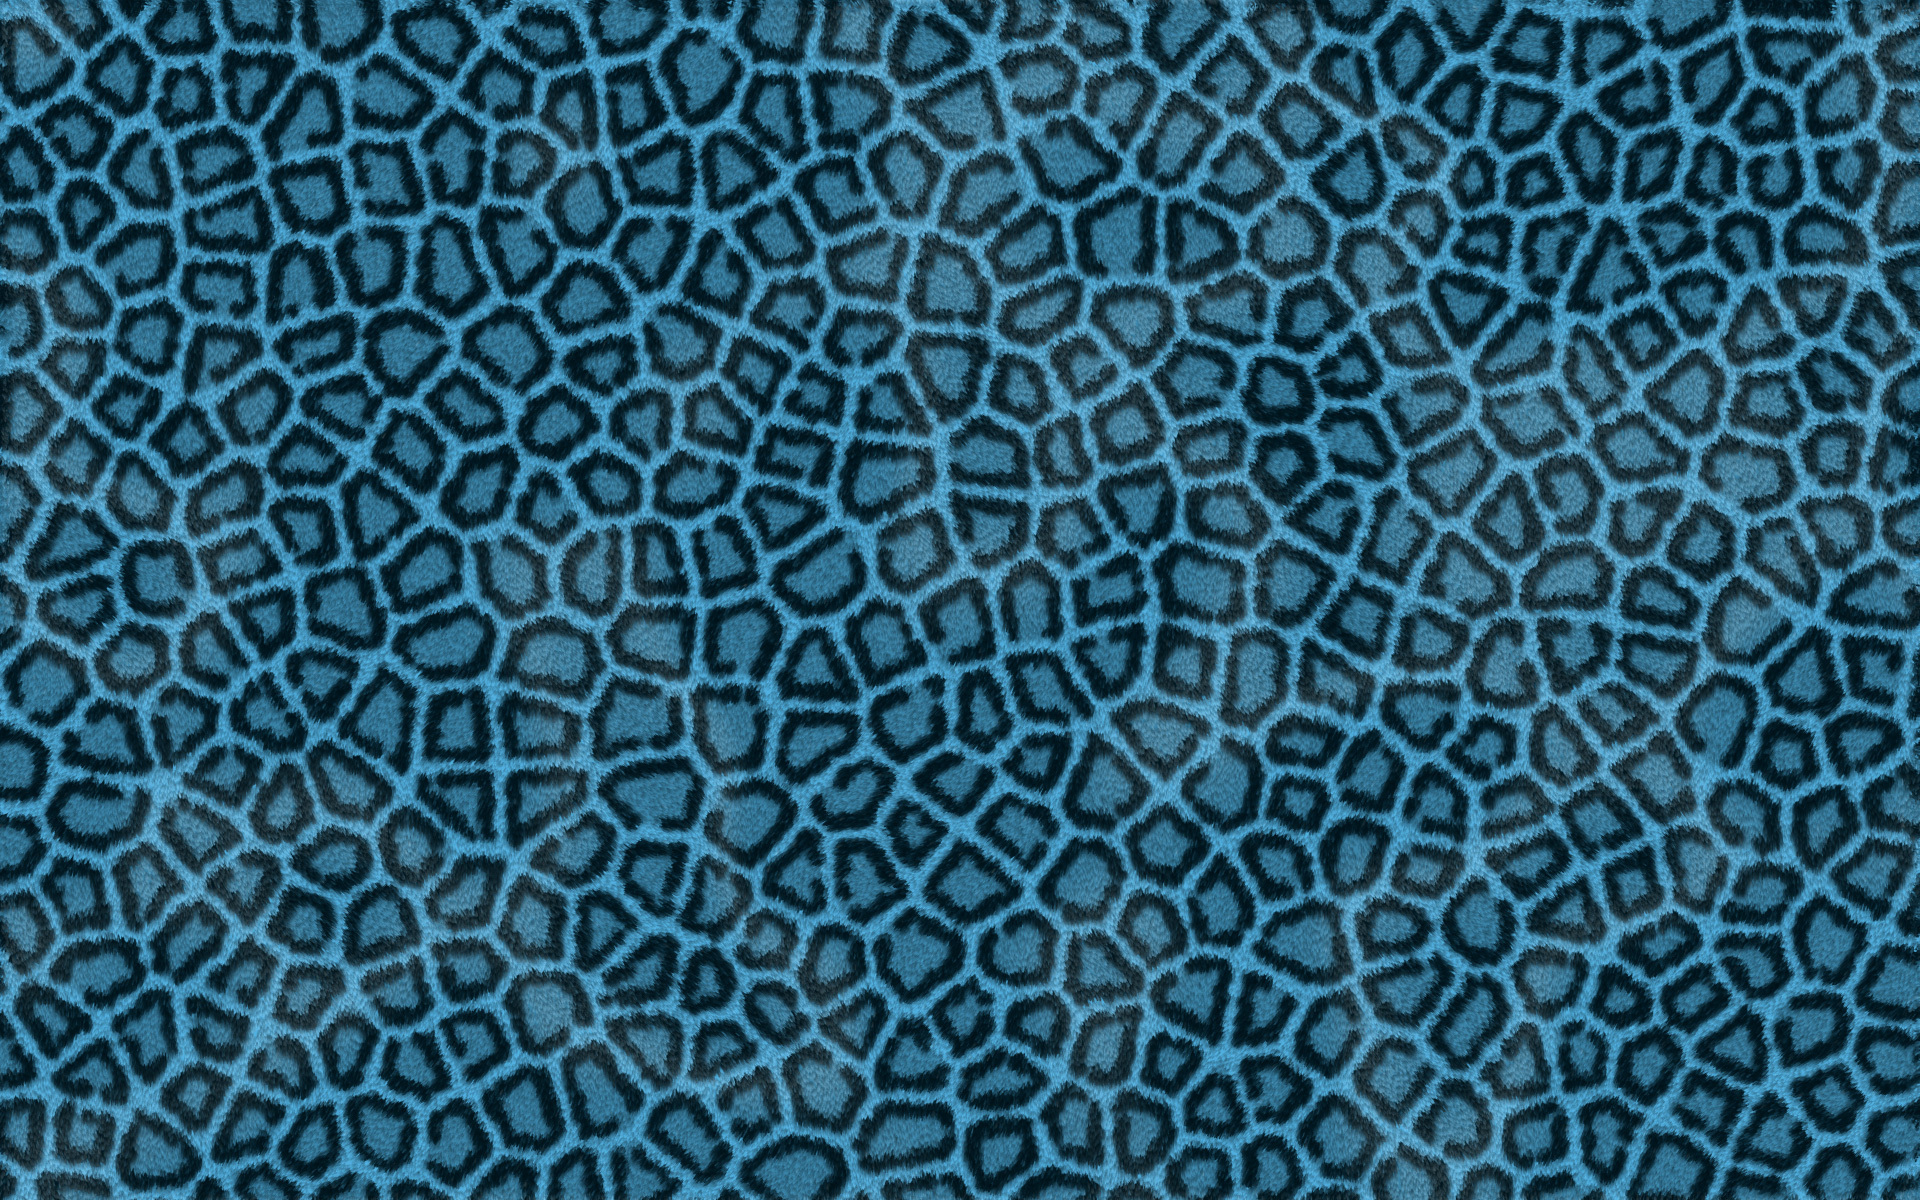 Blue Leopard wallpaper pattern texture Wallpapers 3d for desktop 3d